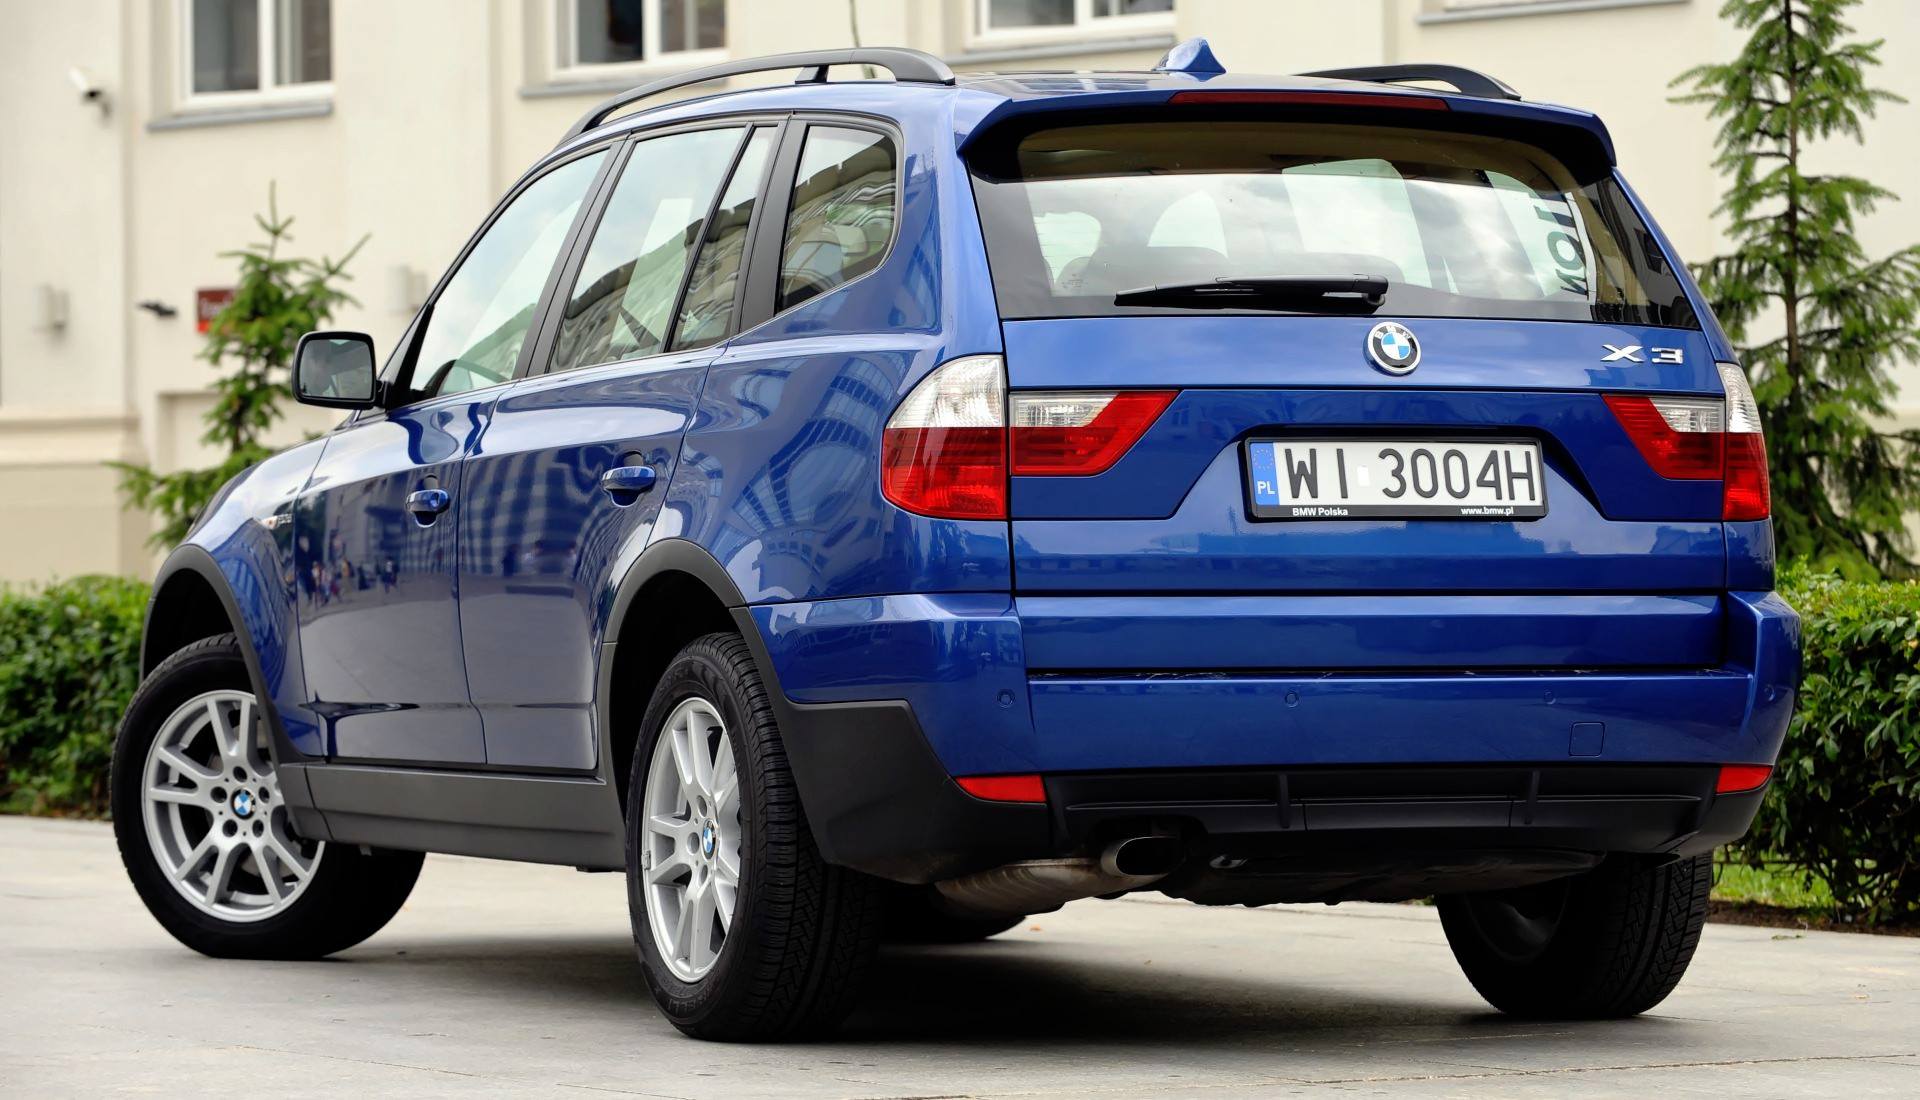 Używane BMW X3 E83 (20032010) opinie, zalety, wady i